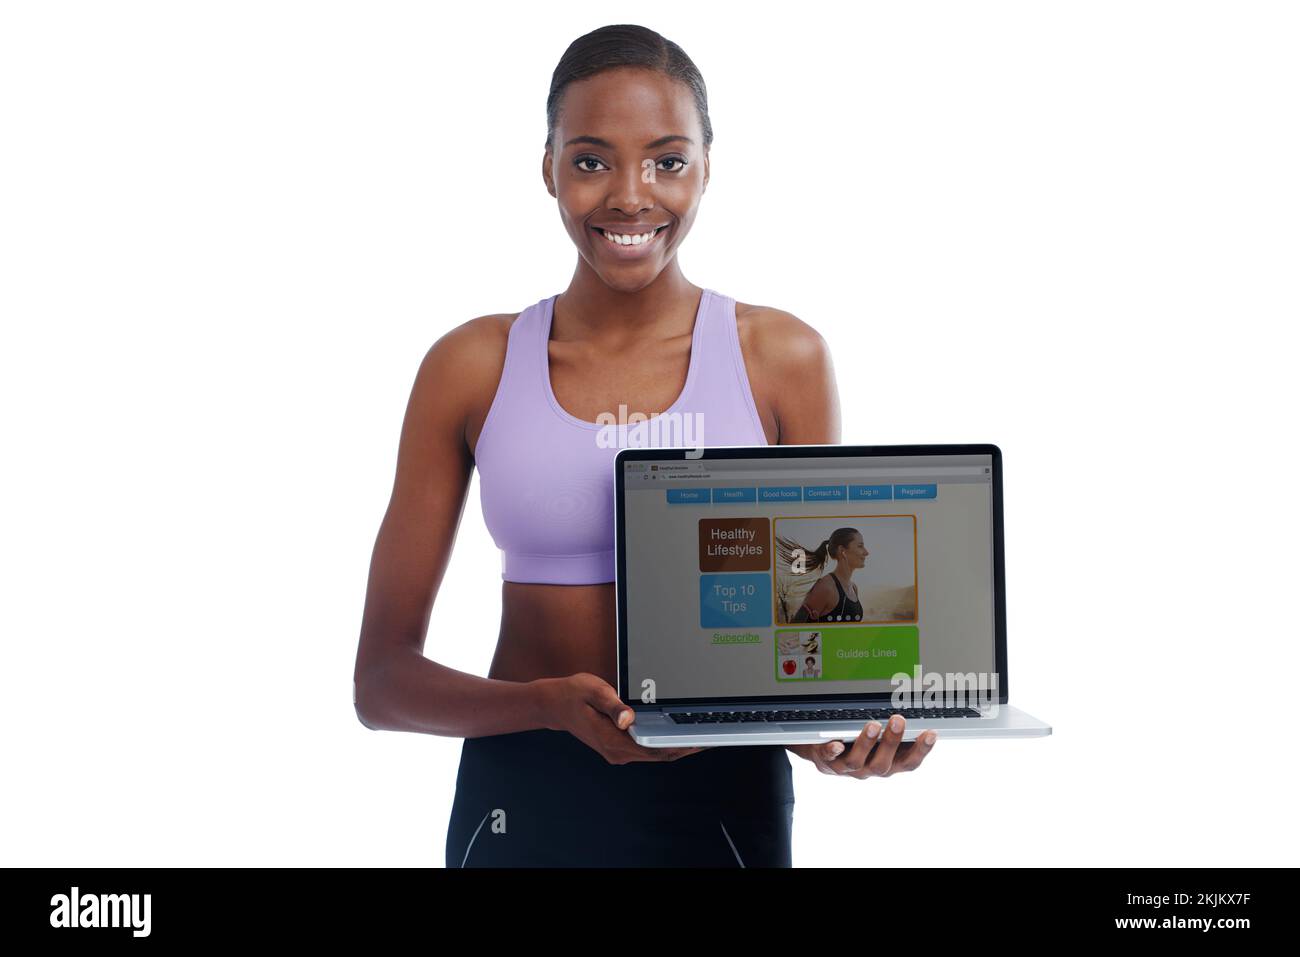 Comenzando su propio Web site de la aptitud. Un retrato de una mujer deportiva feliz mostrando una página web en un portátil. Foto de stock